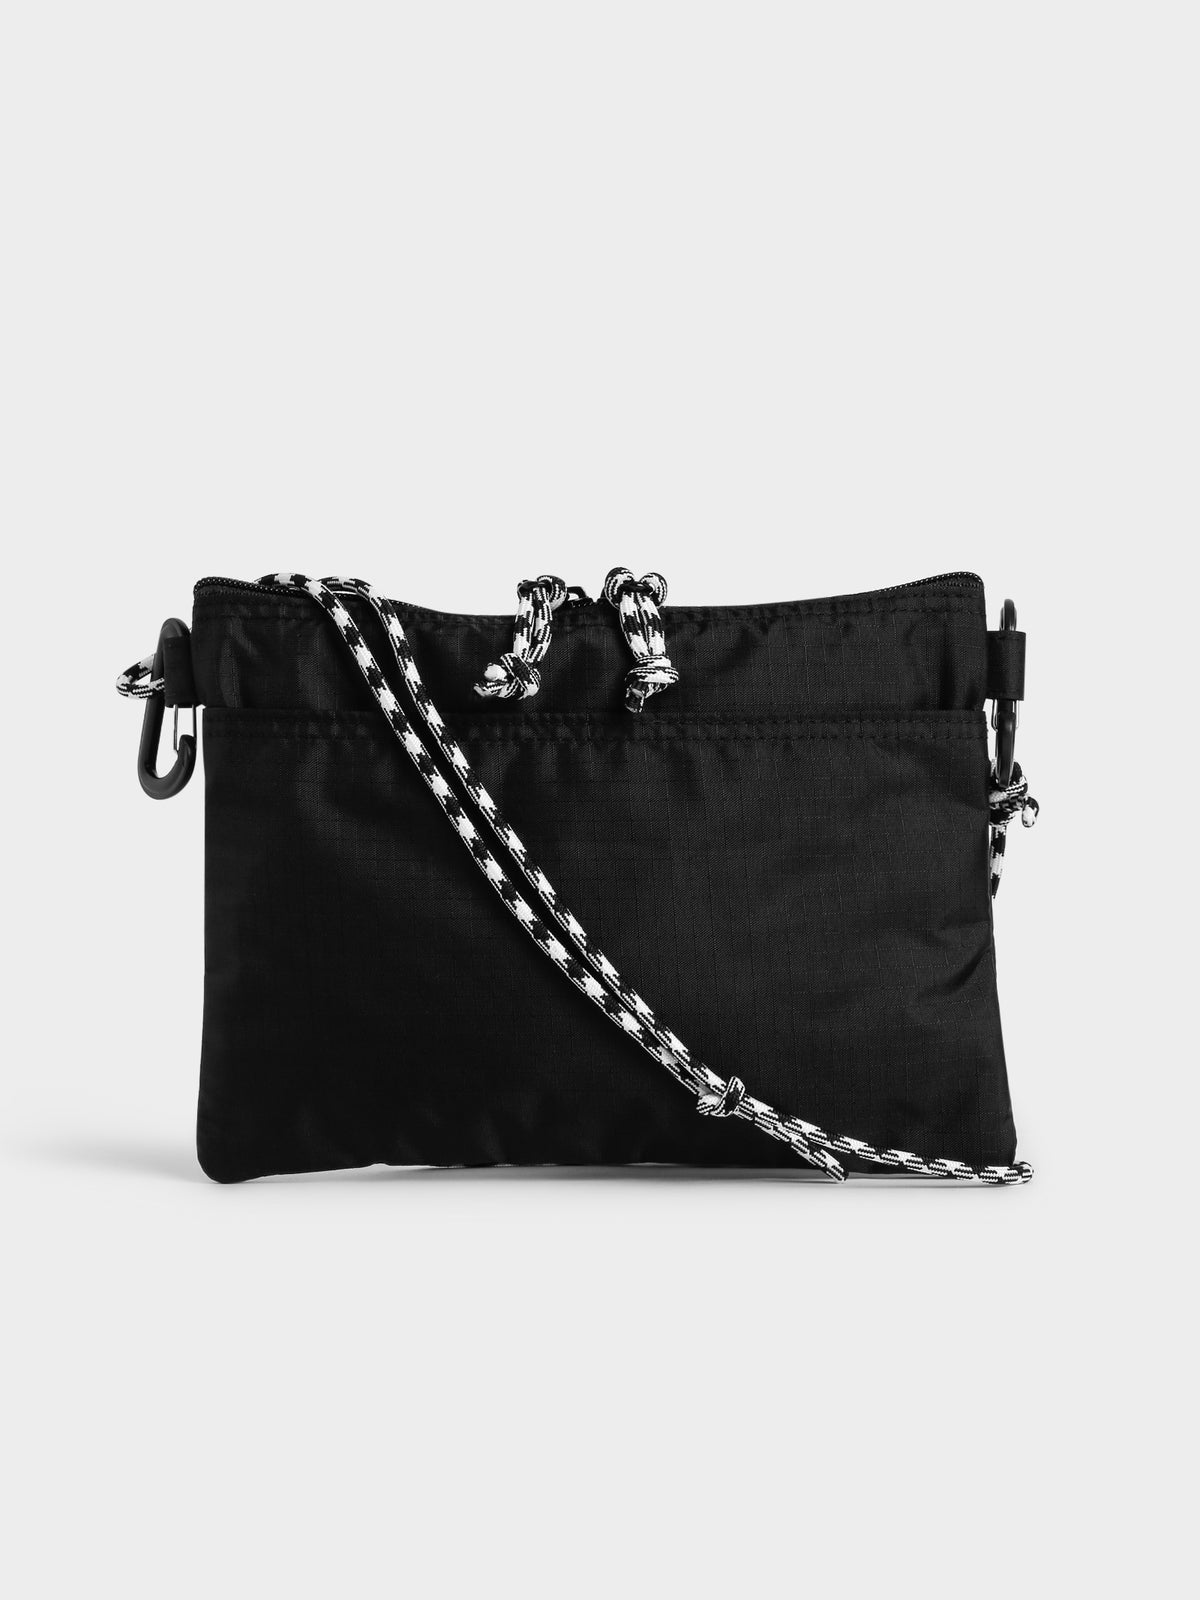 Workgear Sling Bag in Black